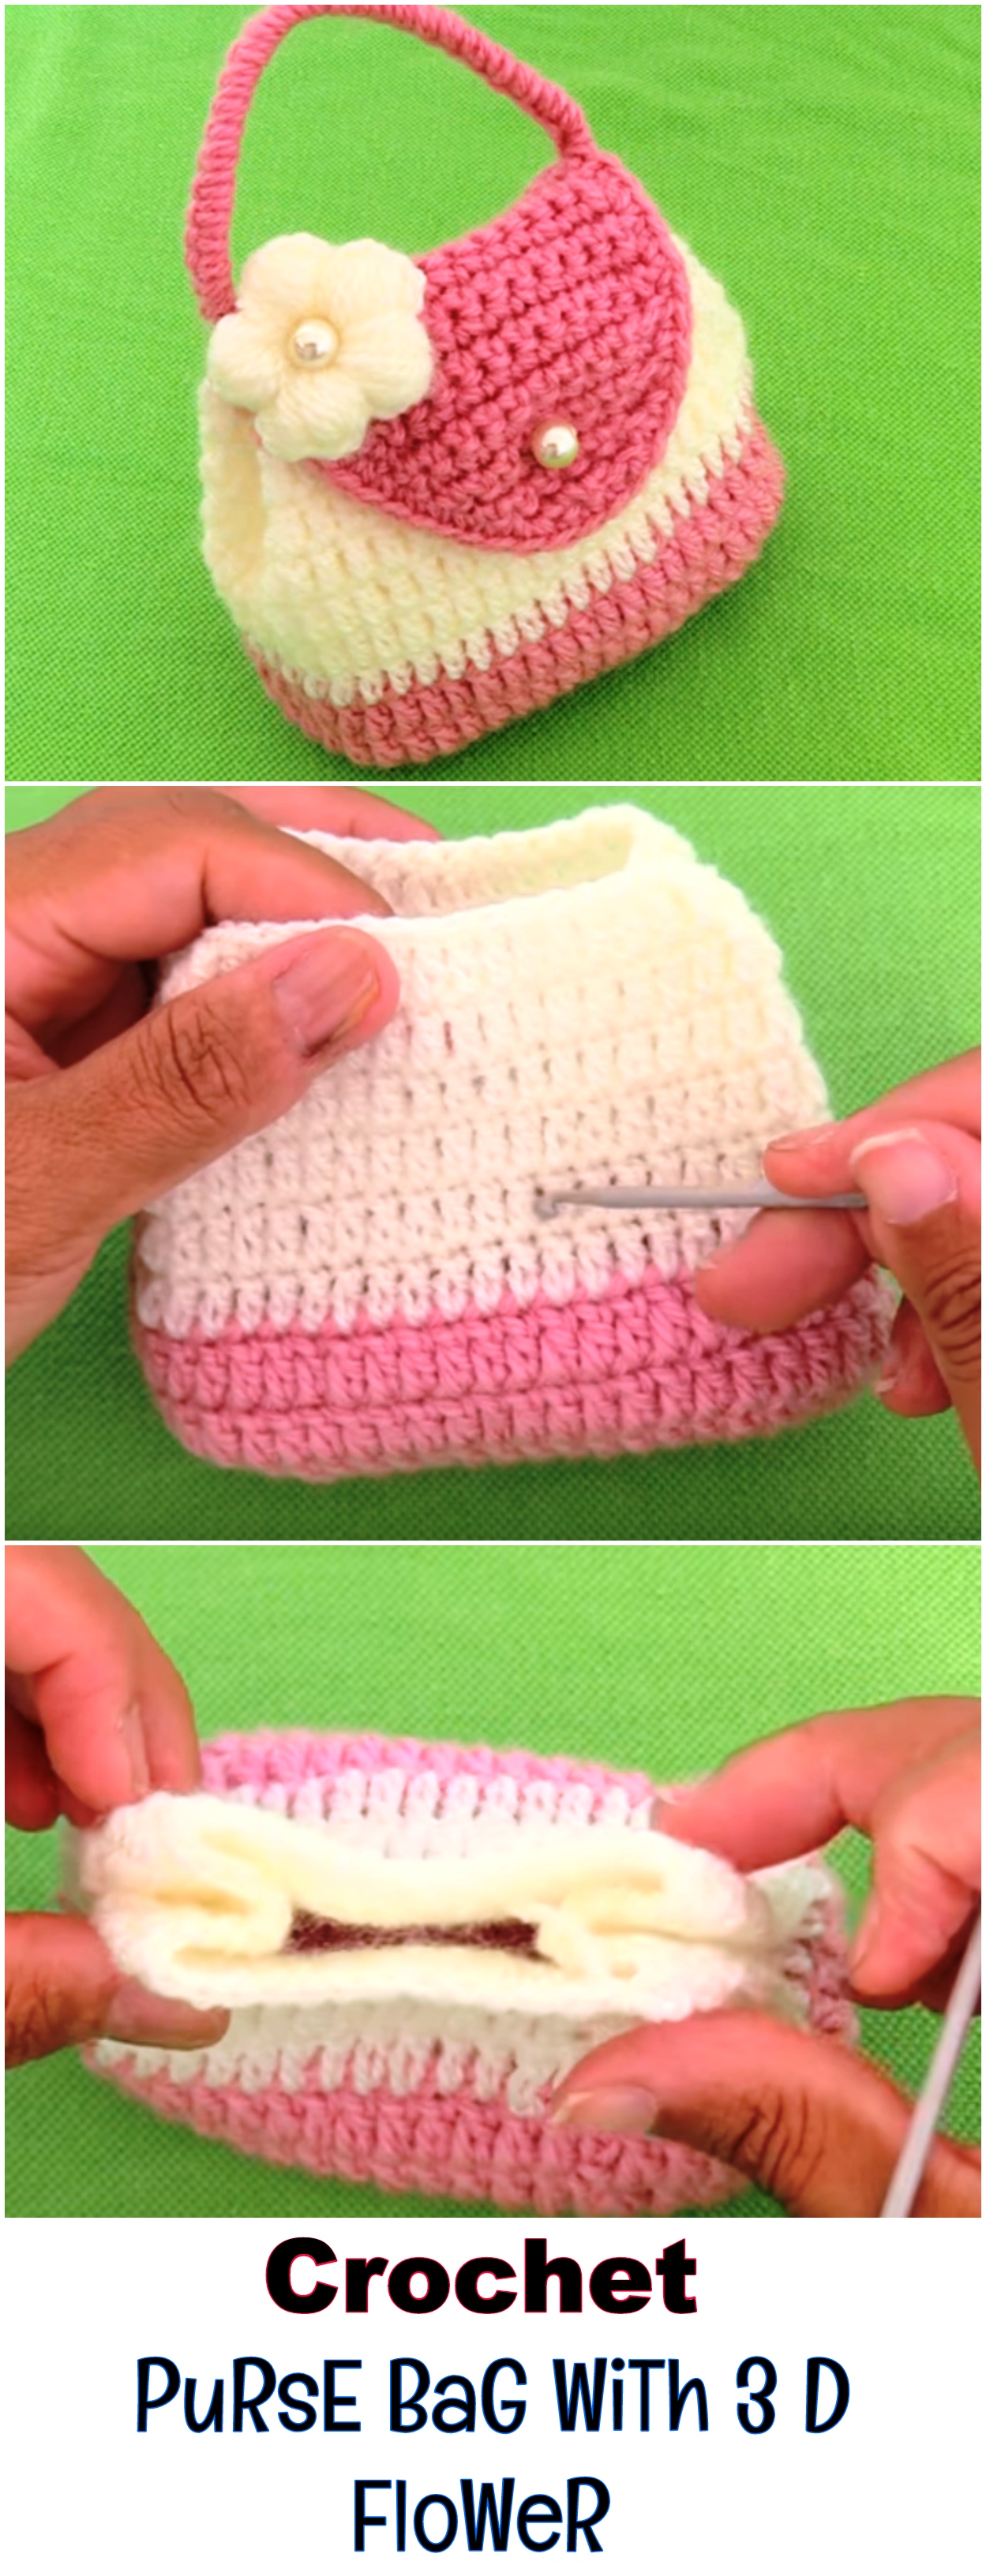 Crochet Purse Bag With 3 D Flower